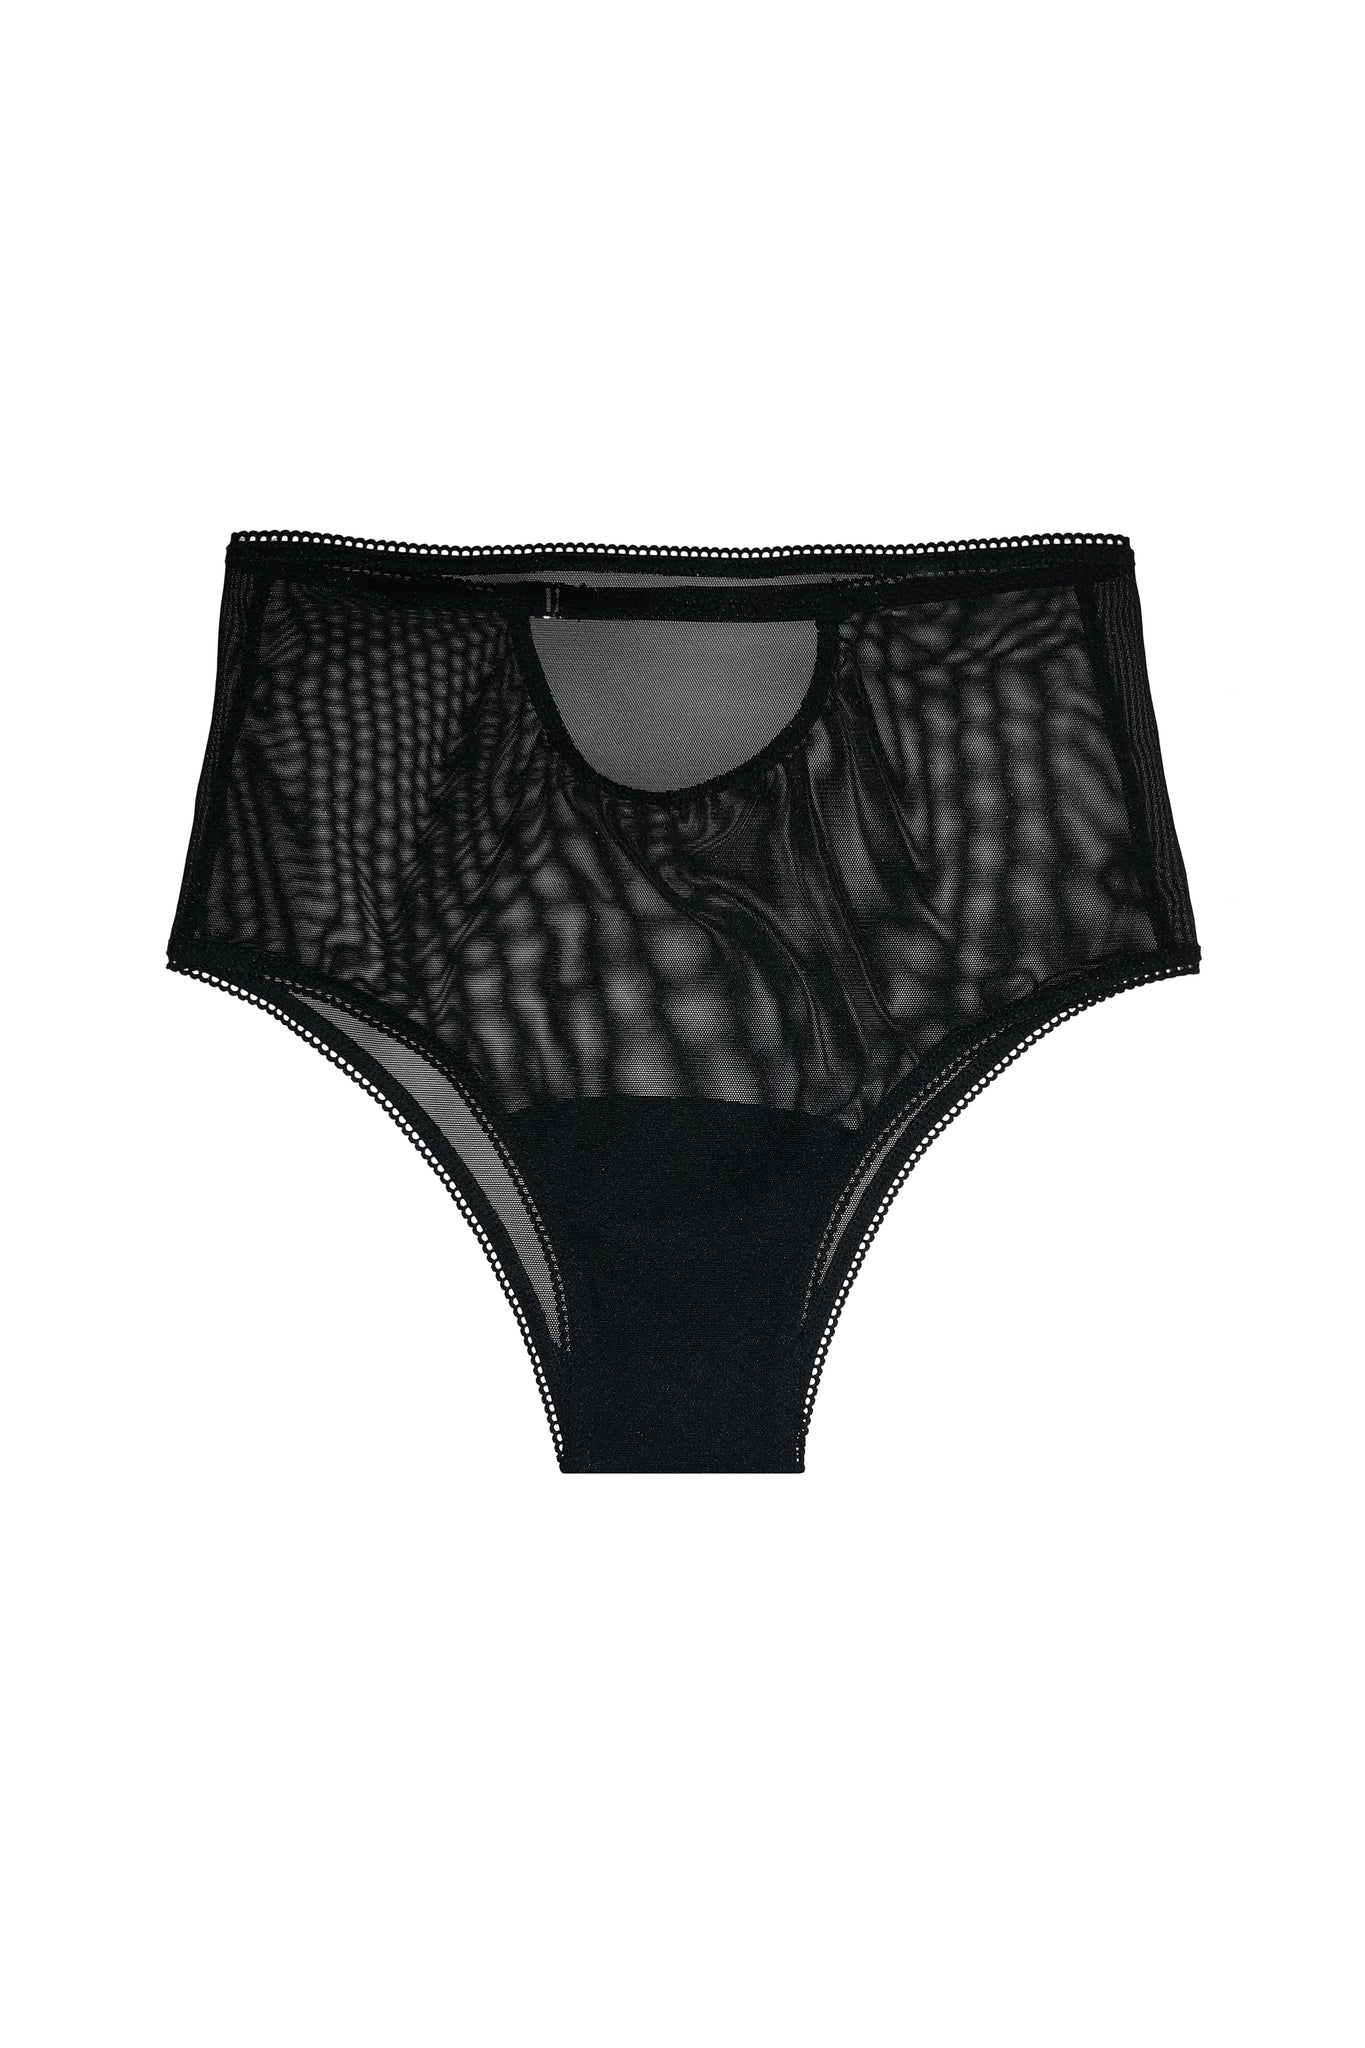 Black Signature Mesh Panties - ShopperBoard